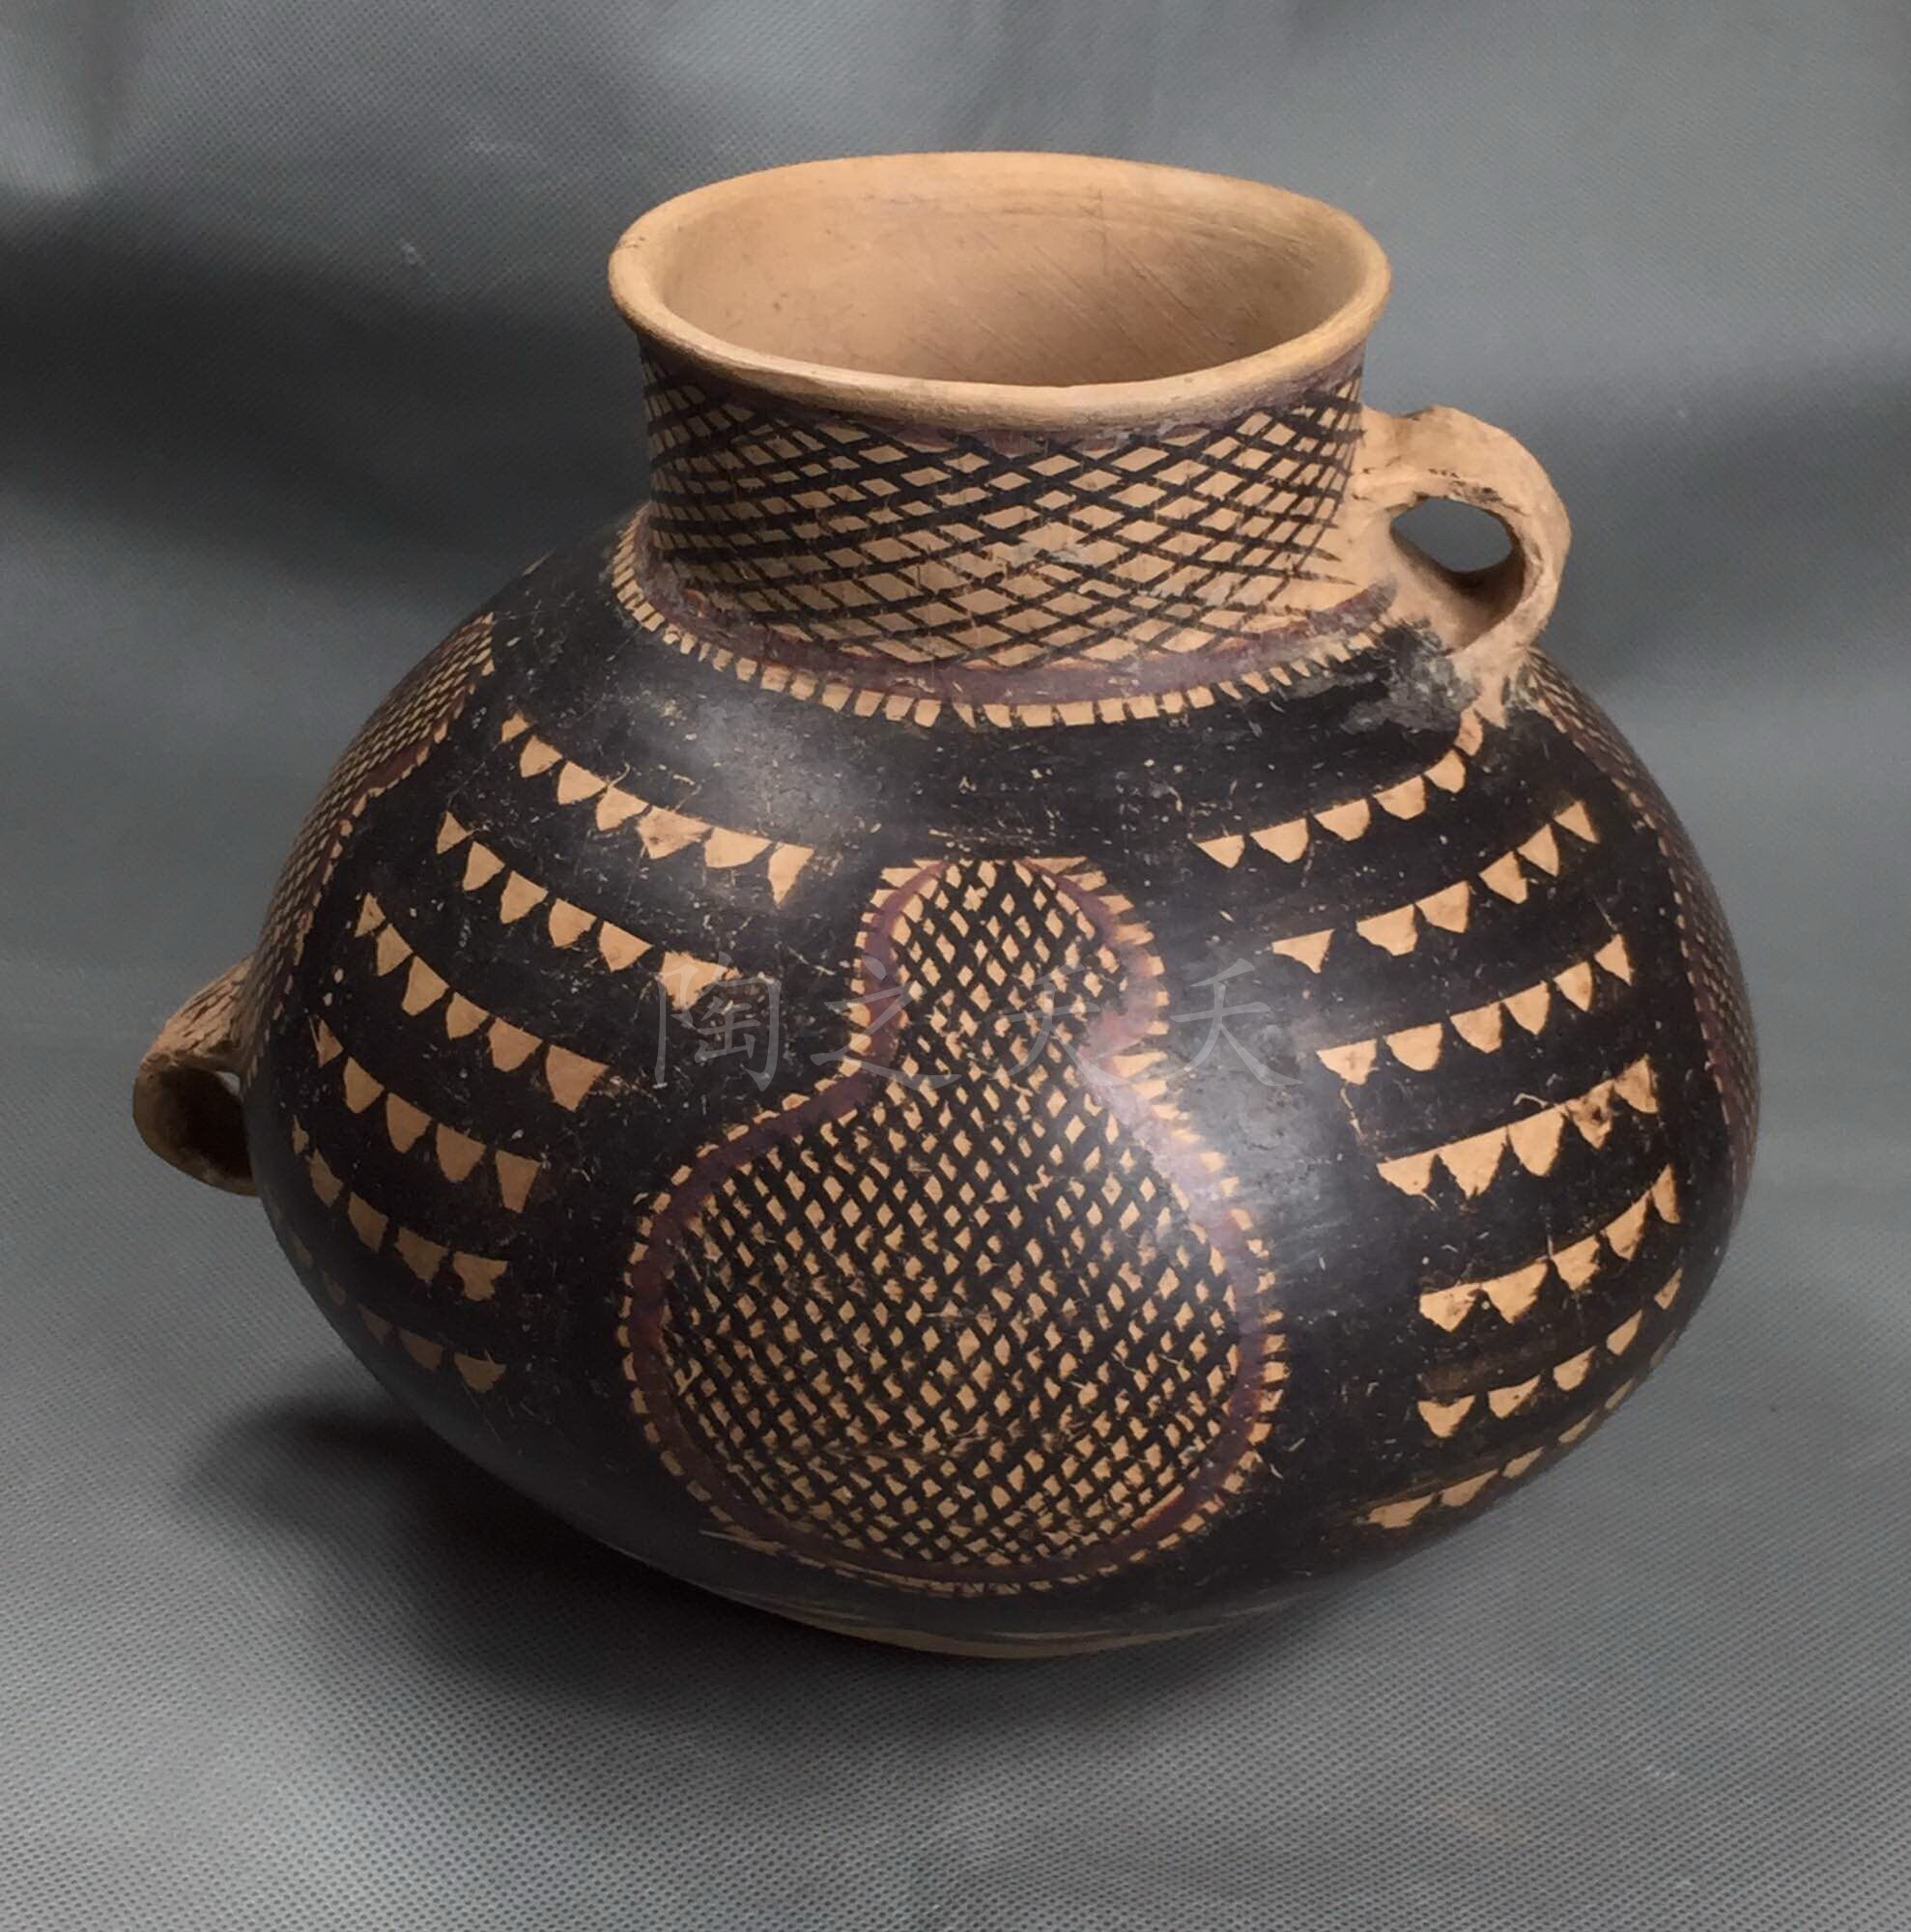 中国古代瓷器器型大全 瓷器爱好者的收藏宝典_ 文化产业网